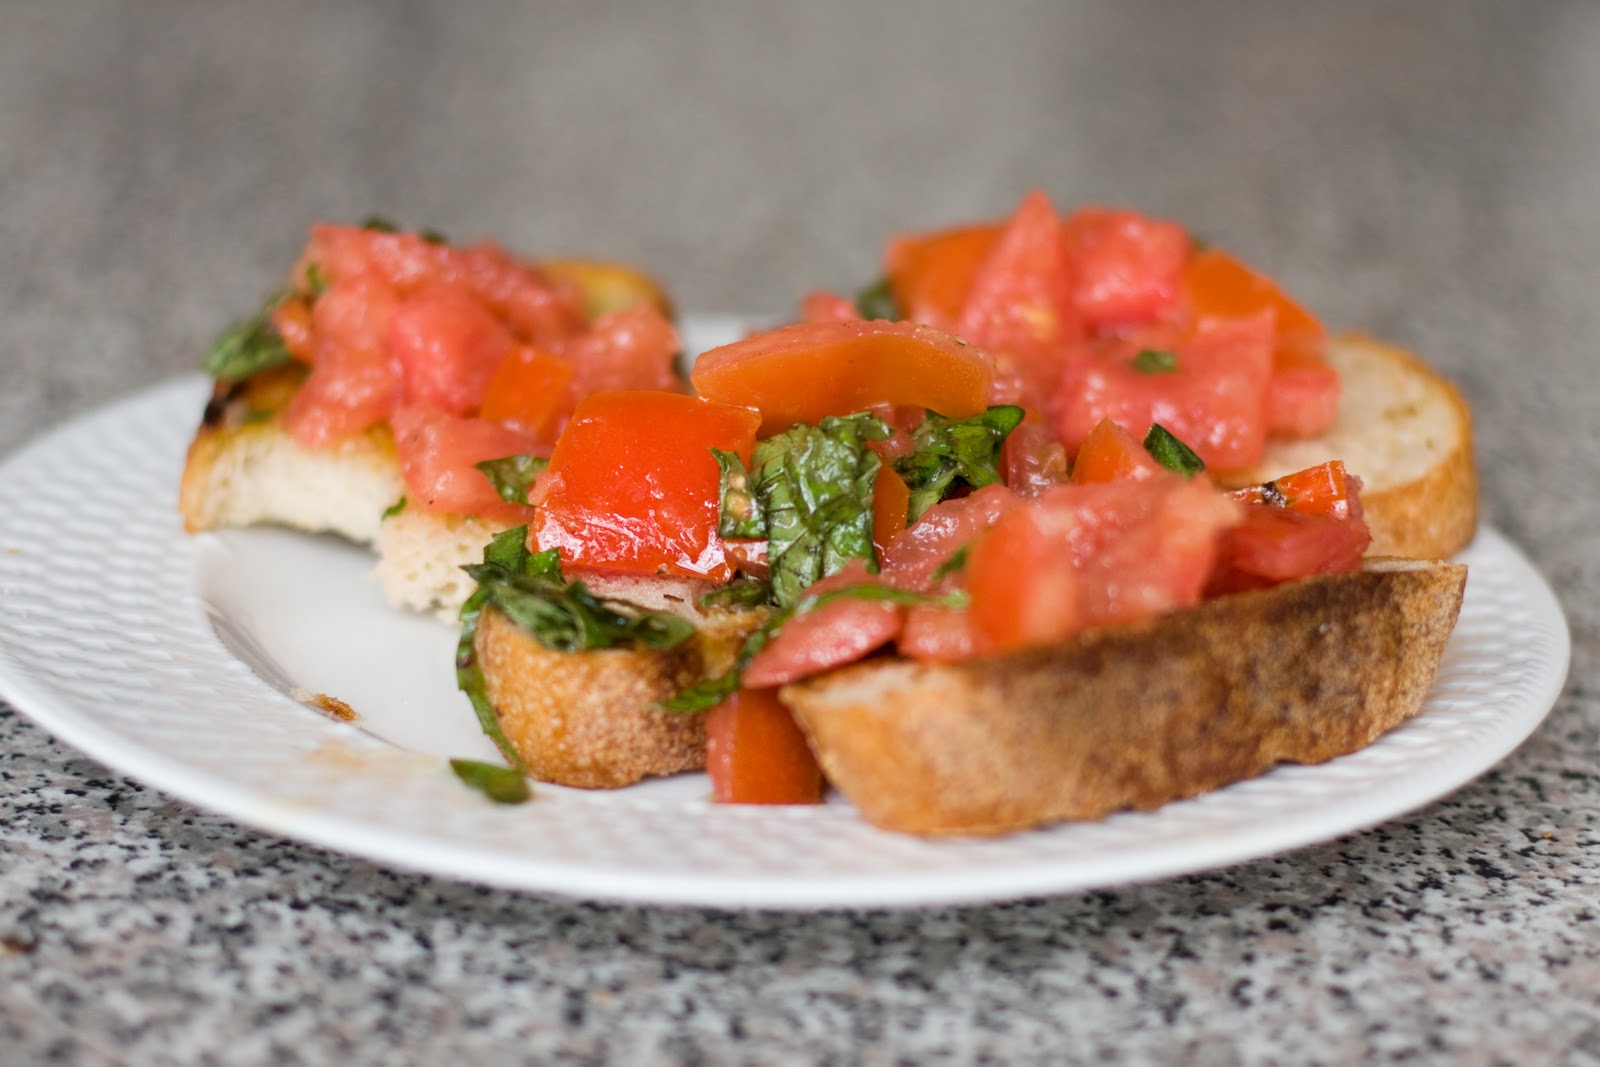 Cooking Italiano Blog: How to Make The Best Tomato-Basil Bruschetta